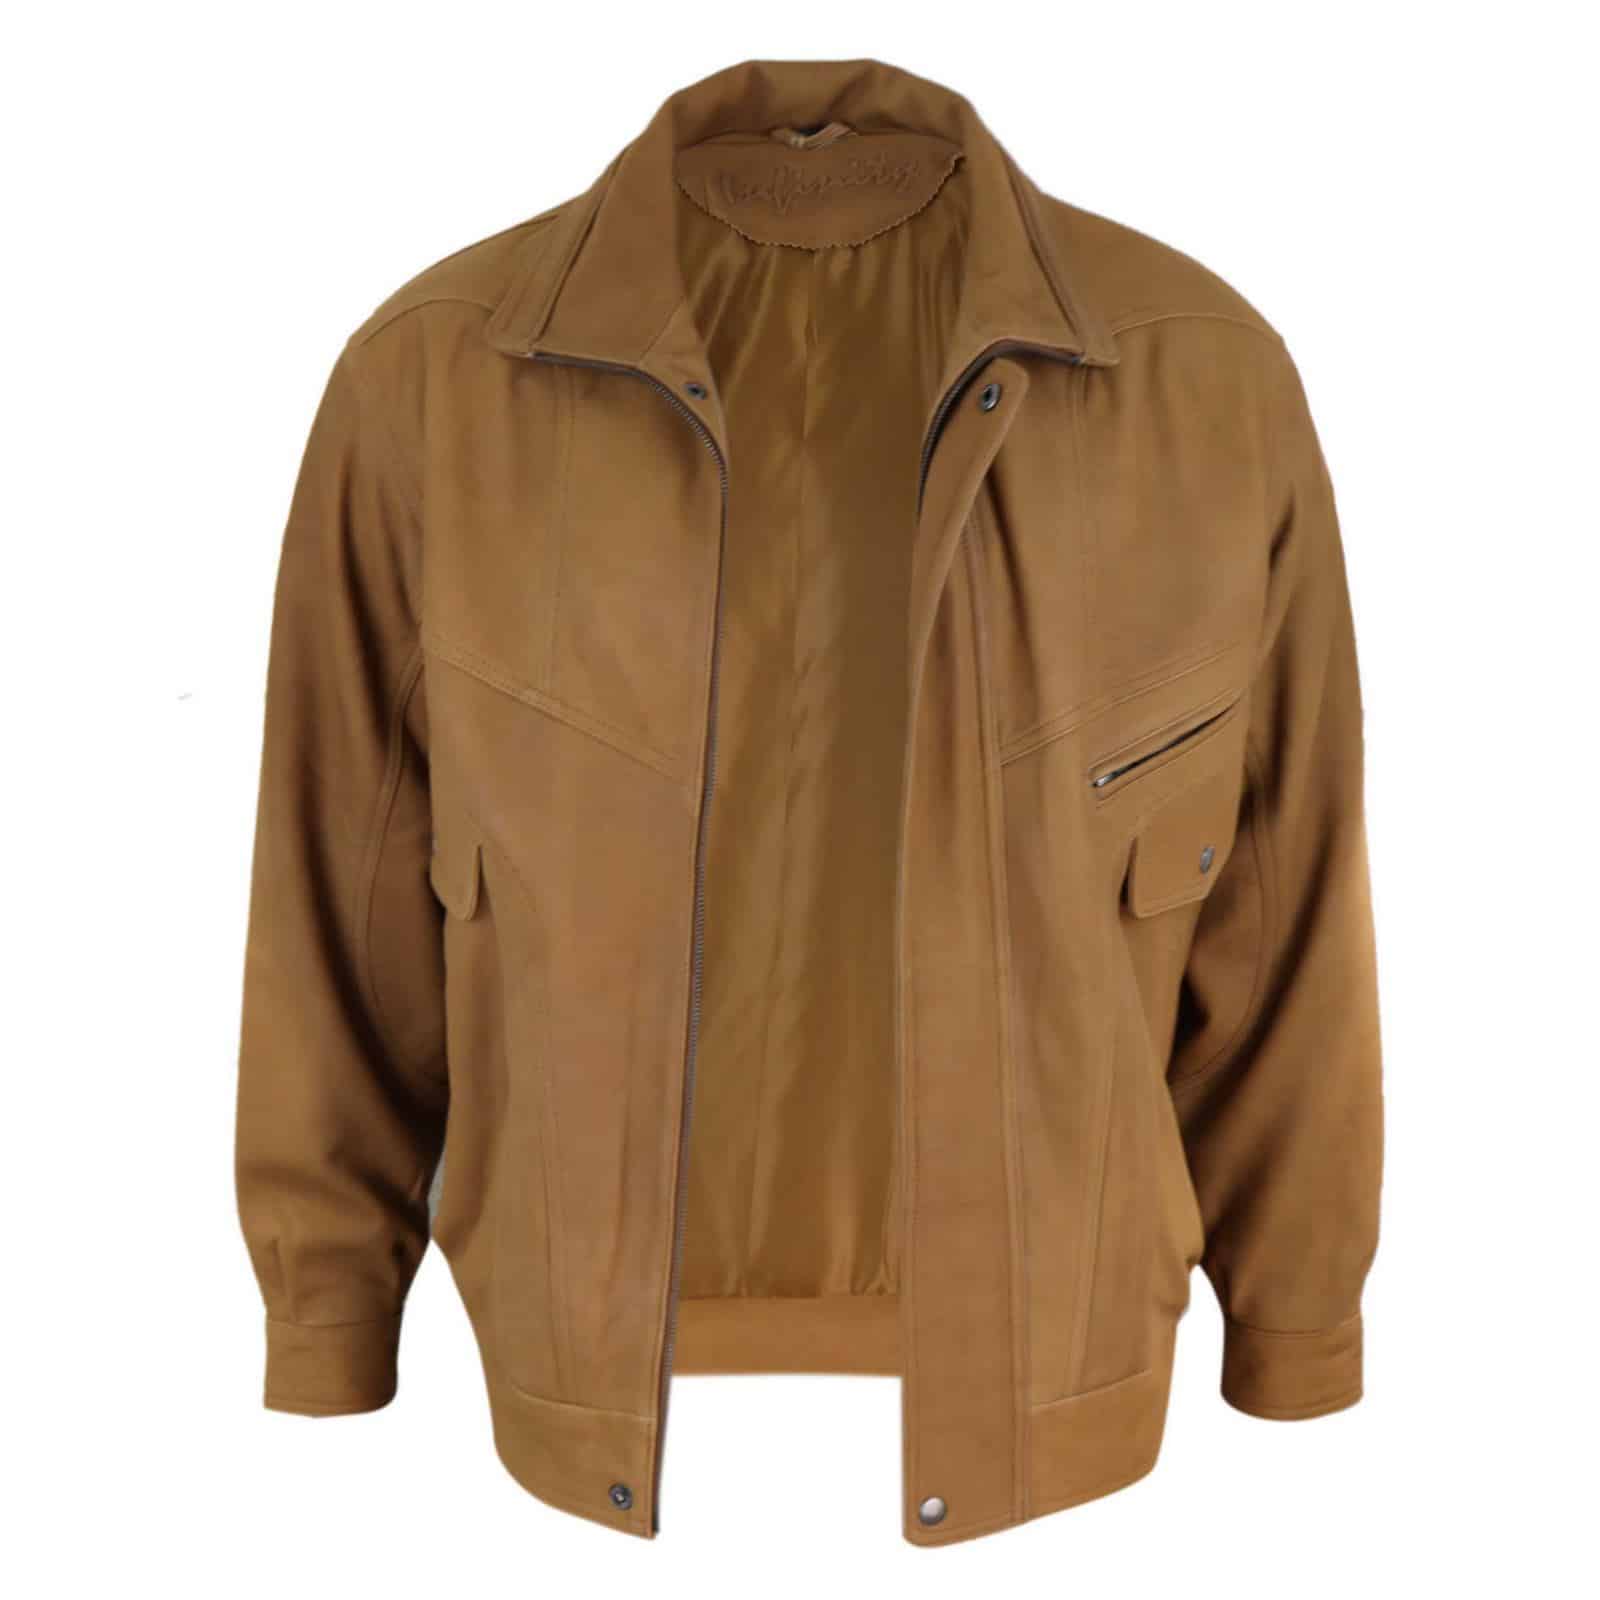 Mens Classic Nubuck Leather Bomber Jacket - Tan: Buy Online - Happy Gentleman